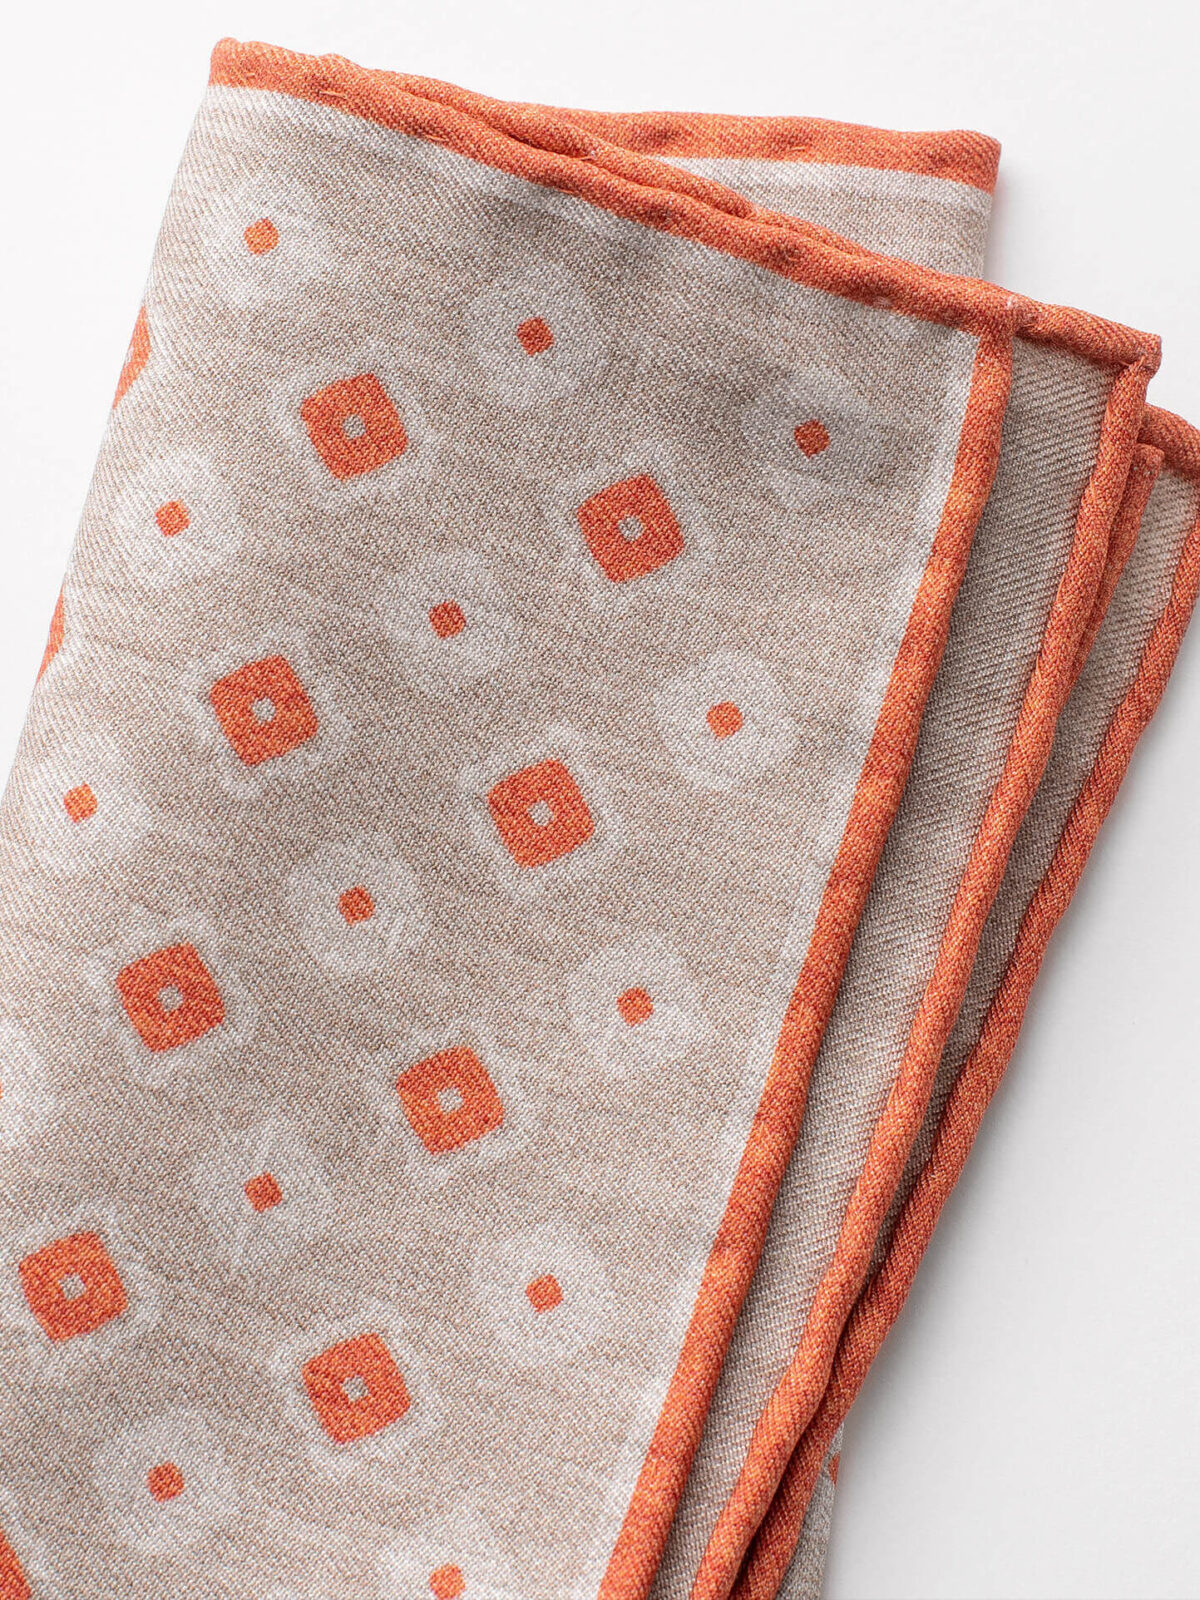 Beige and Orange Tile Print Pocket Square